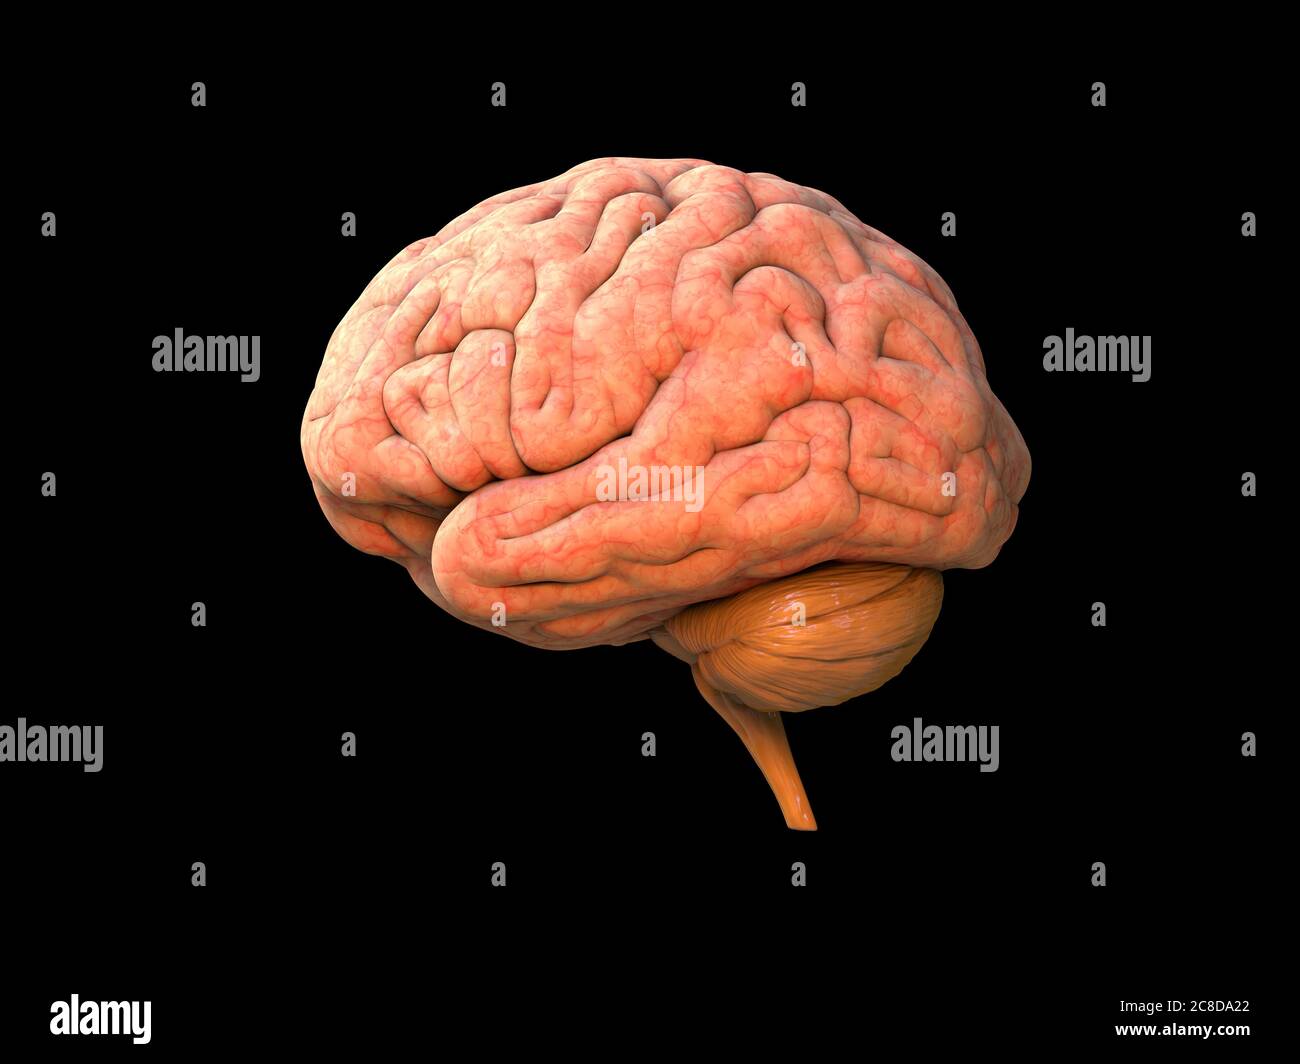 Anatomia umana cerebrale 3D - struttura anatomica cerebrale isolata, organo capo, lobi, sistema nervoso, oggetto neurologico, potere dell'attività umana, parte del corpo, br Foto Stock